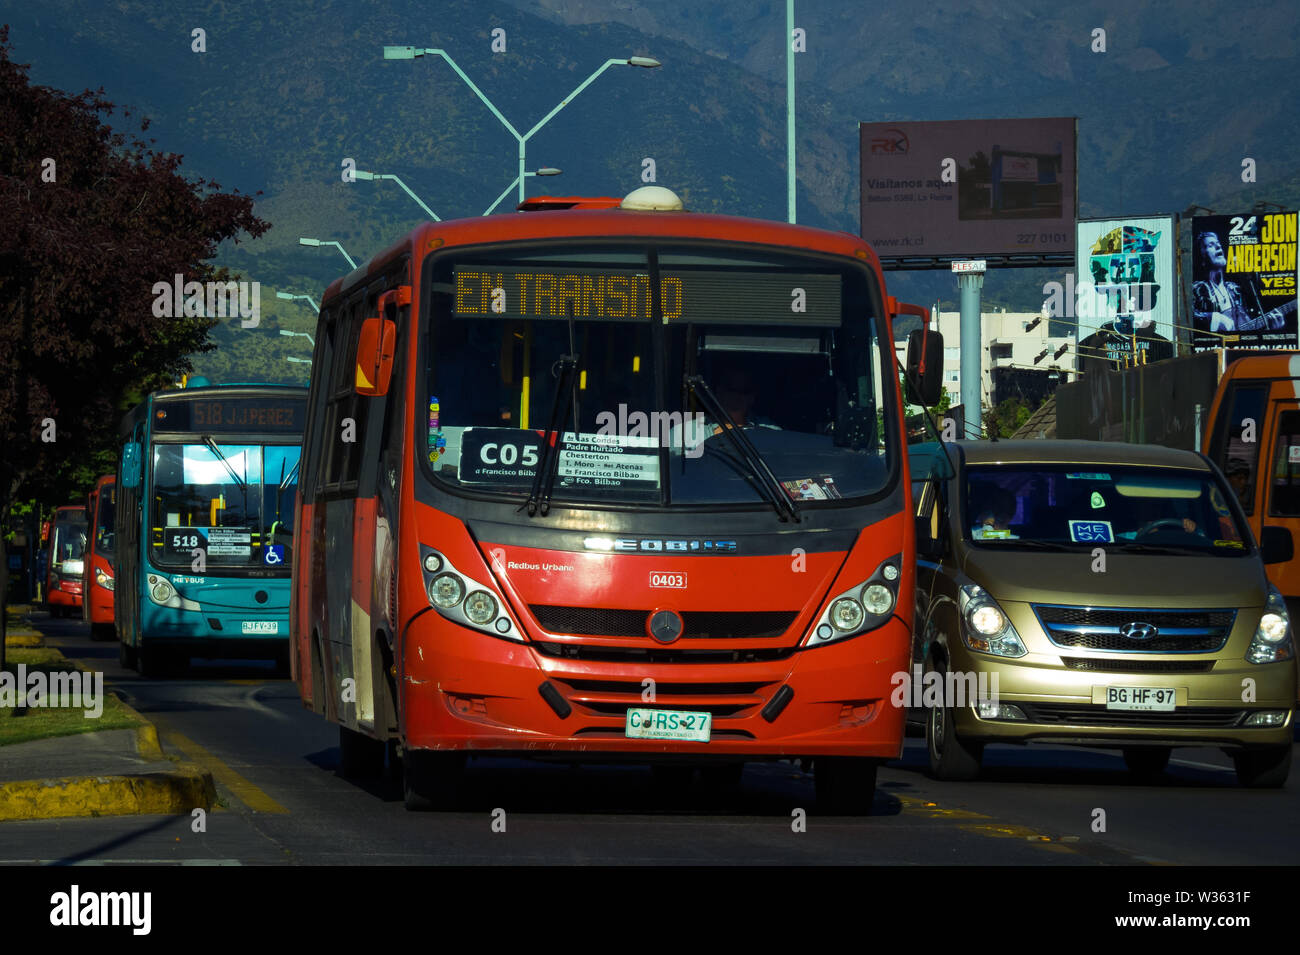 SANTIAGO, CHILE - OCTOBER 2014: Public transport bus in La Reina Stock Photo